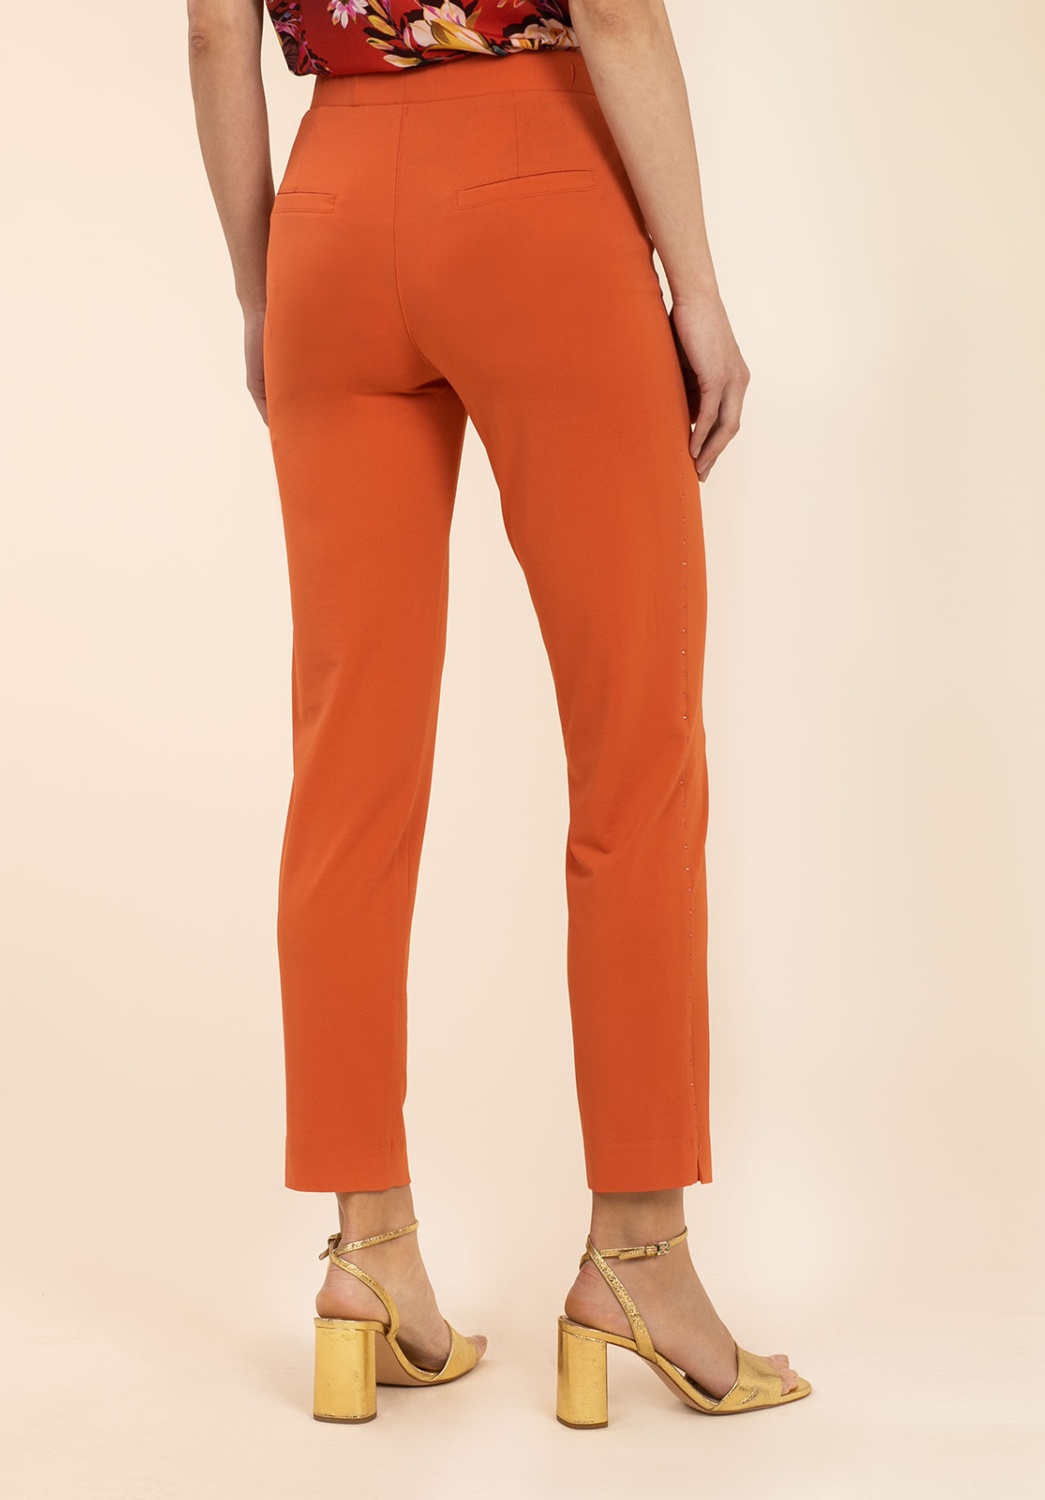 Orange Trousers With Rhinestones 3